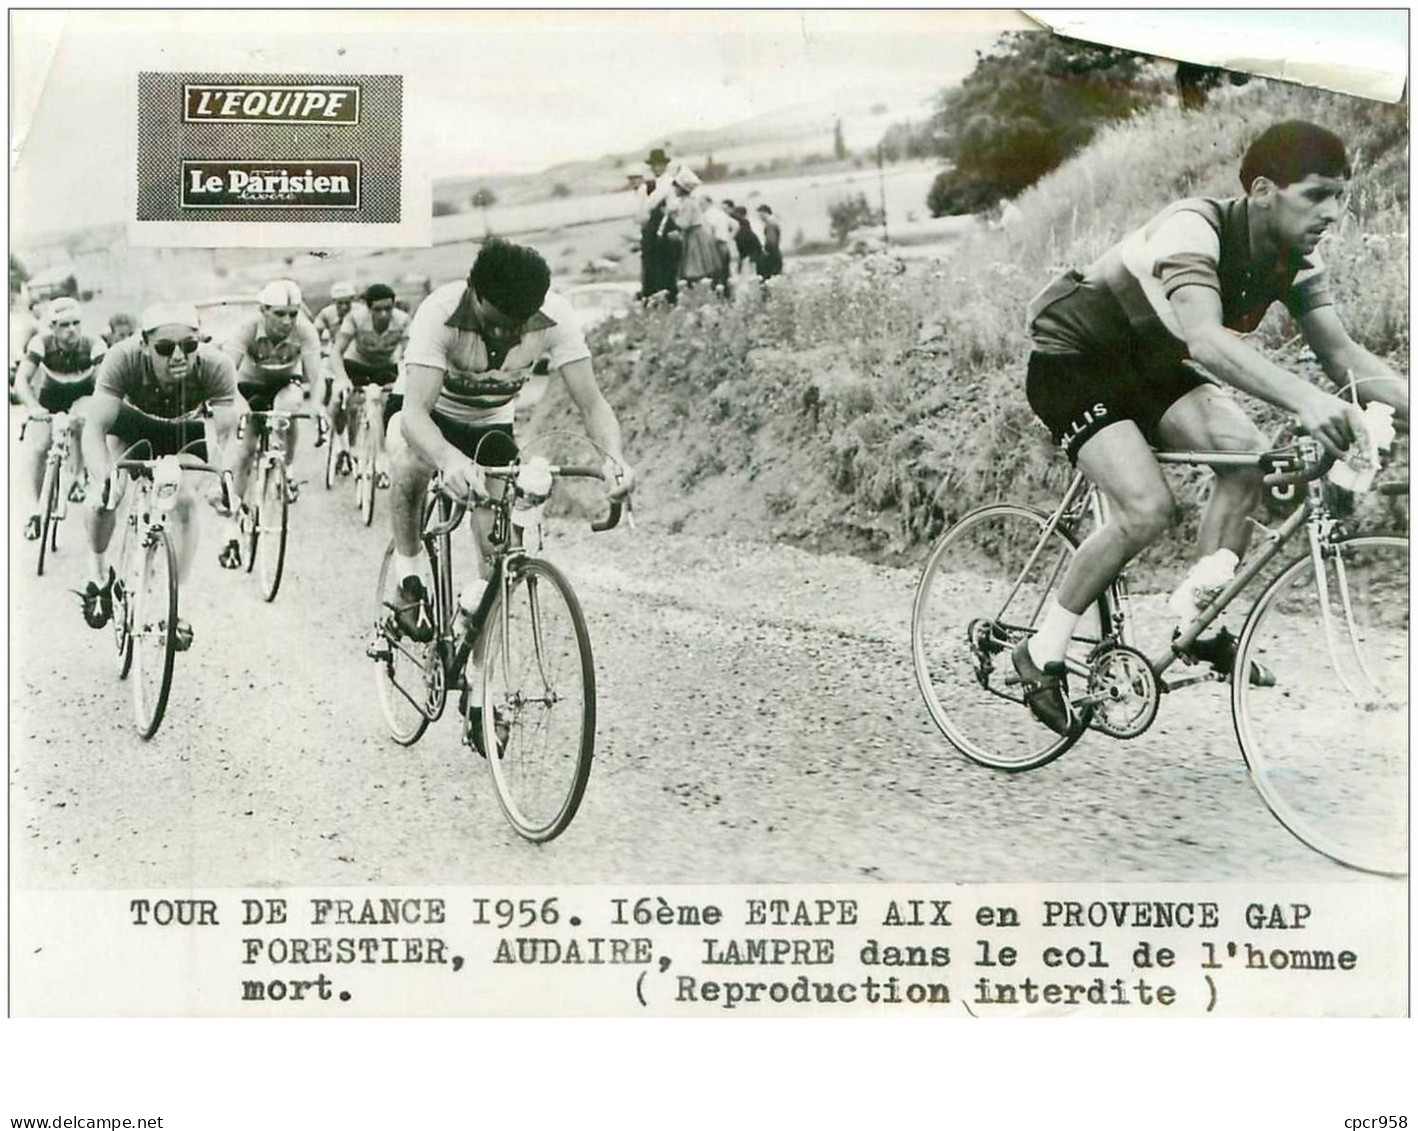 PHOTO DE PRESSE ORIGINALE TOUR DE FRANCE 1956.20X15.16eme ETAPE AIX EN PROVENCE GAP.FORESTIER,AUDAIRE,LAMPRE DAN.n°18695 - Radsport